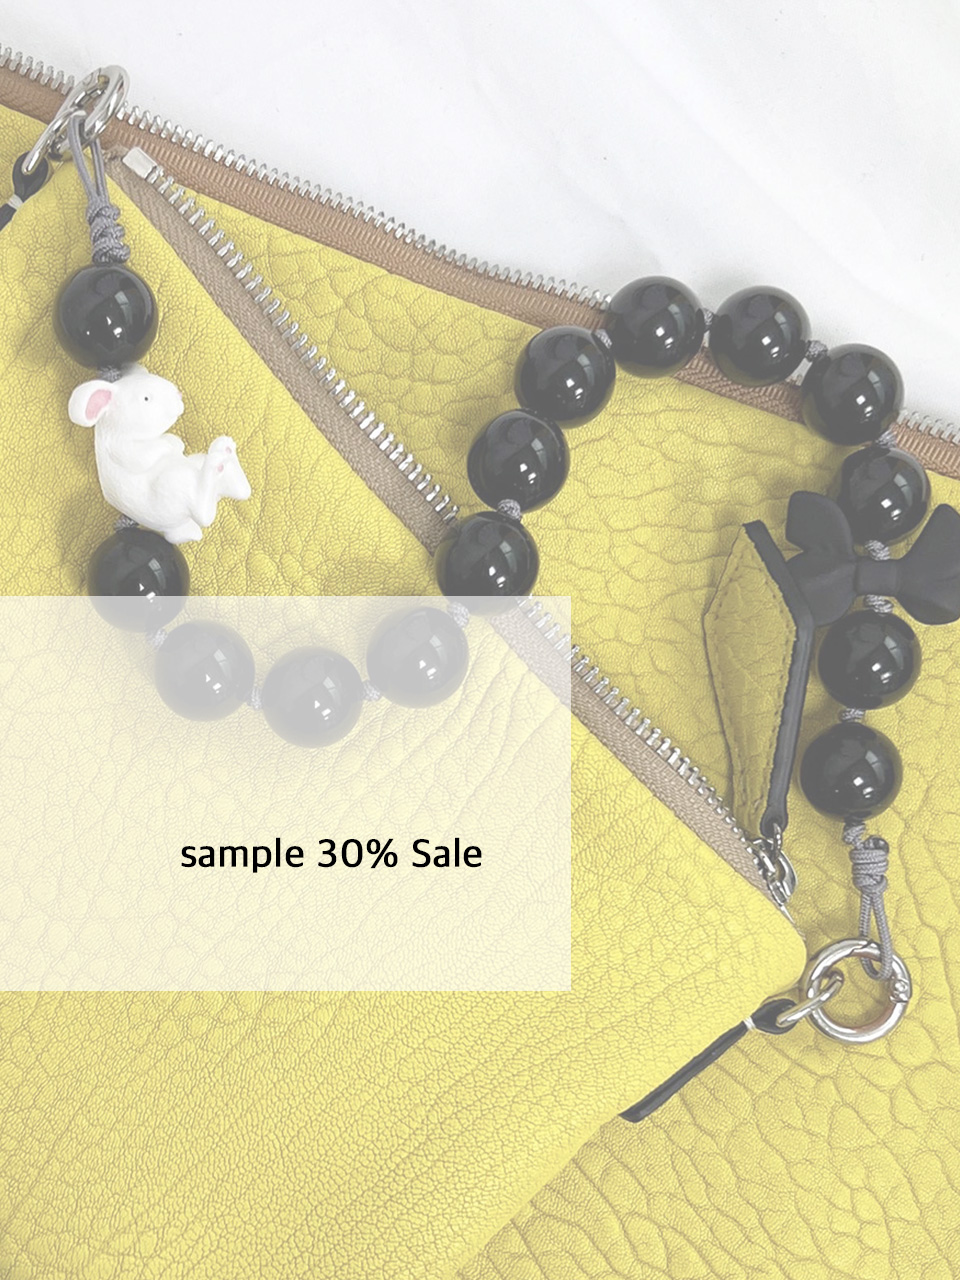 sample 30% sale  flower clutchbag